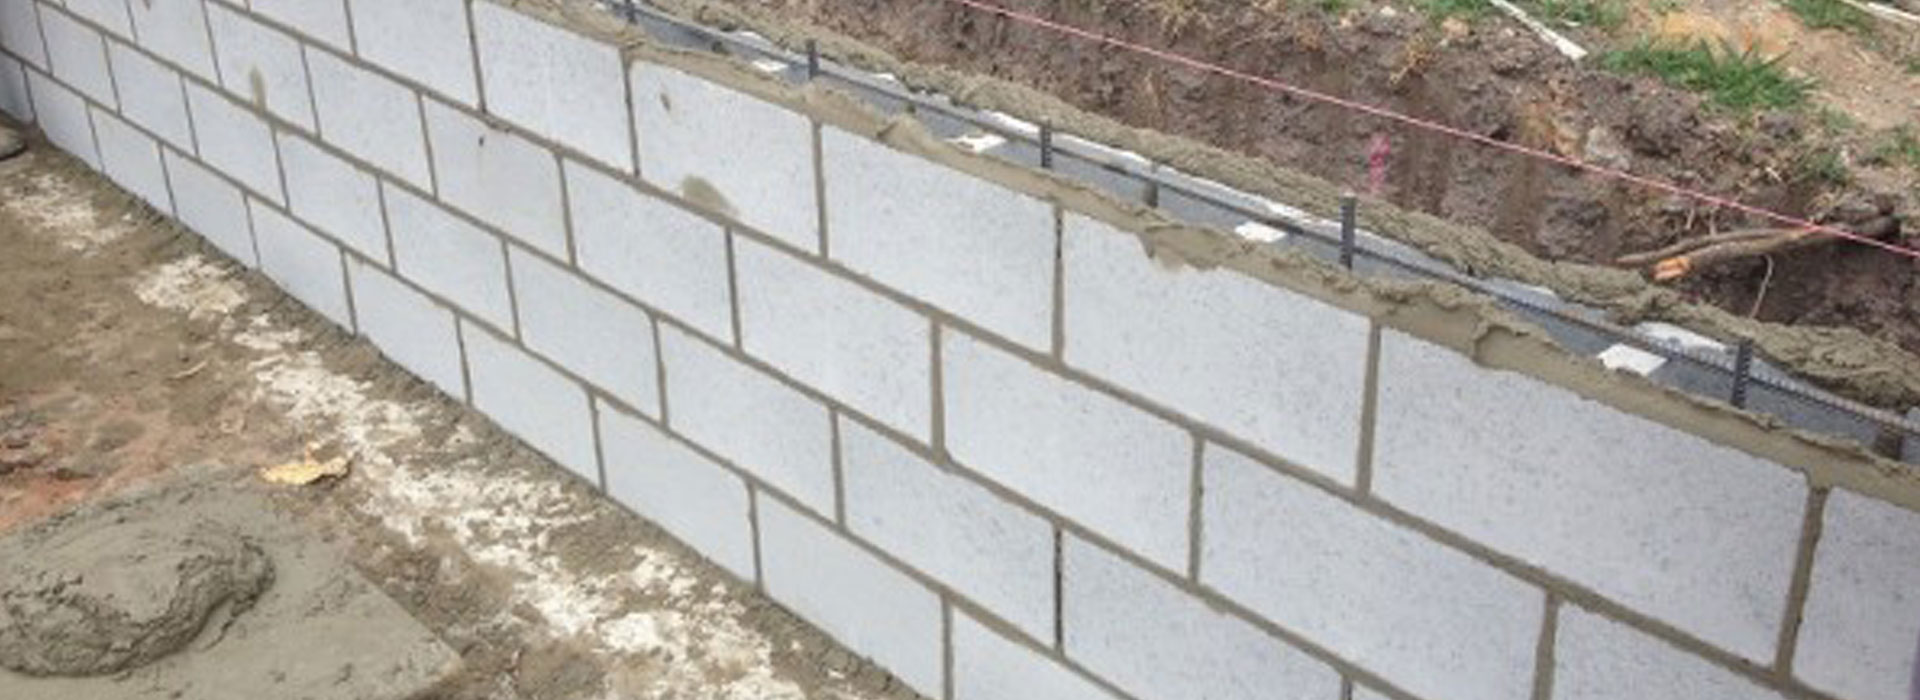 Concrete Bricks | Cement Blocks Melbourne | Cheap Cement Blocks